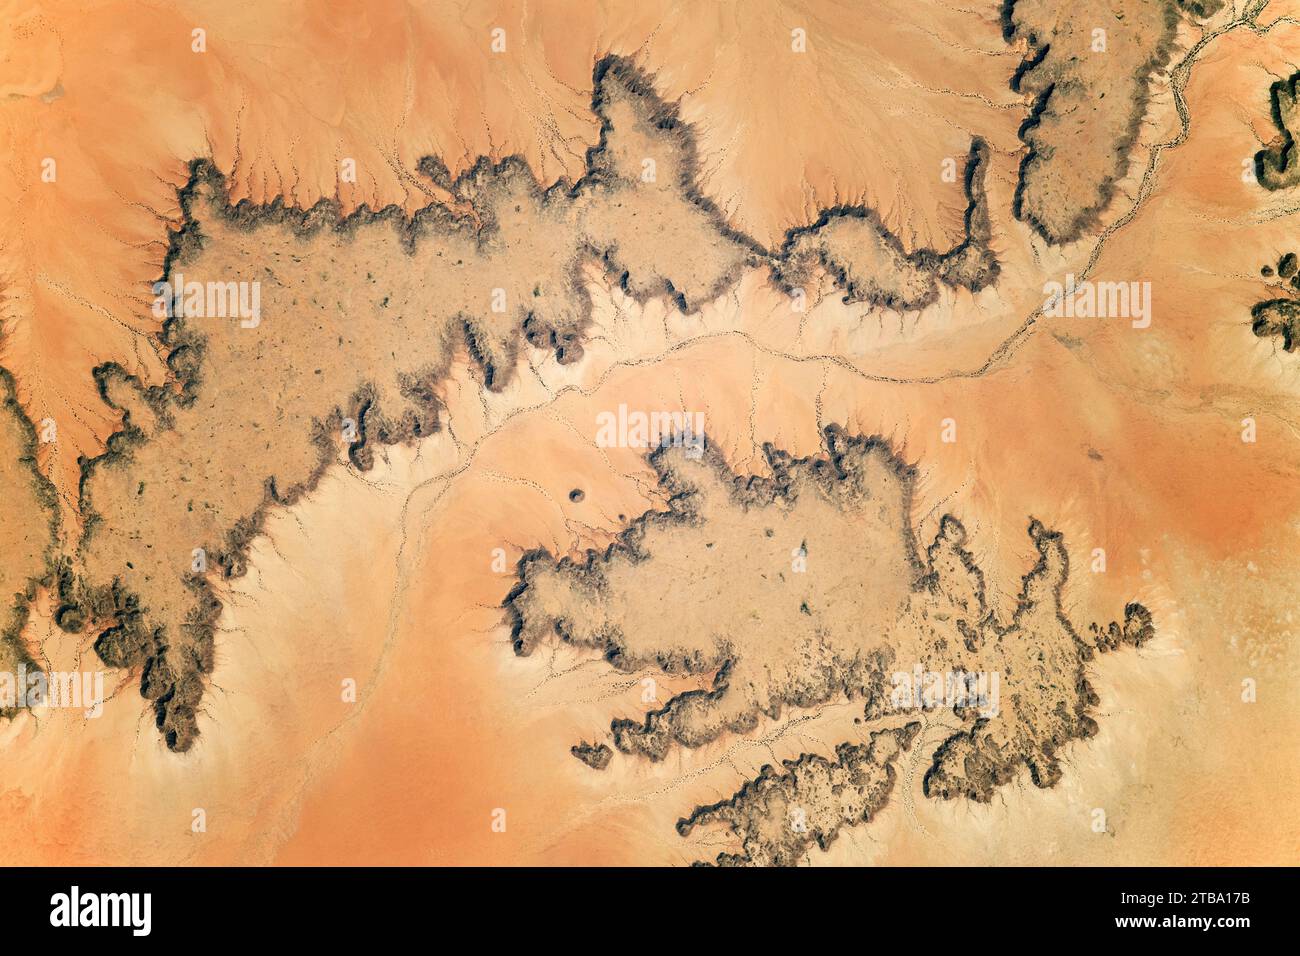 Vue de l'espace des mesas à sommet plat dans le désert du Sahara oriental au Soudan, en Afrique. Banque D'Images